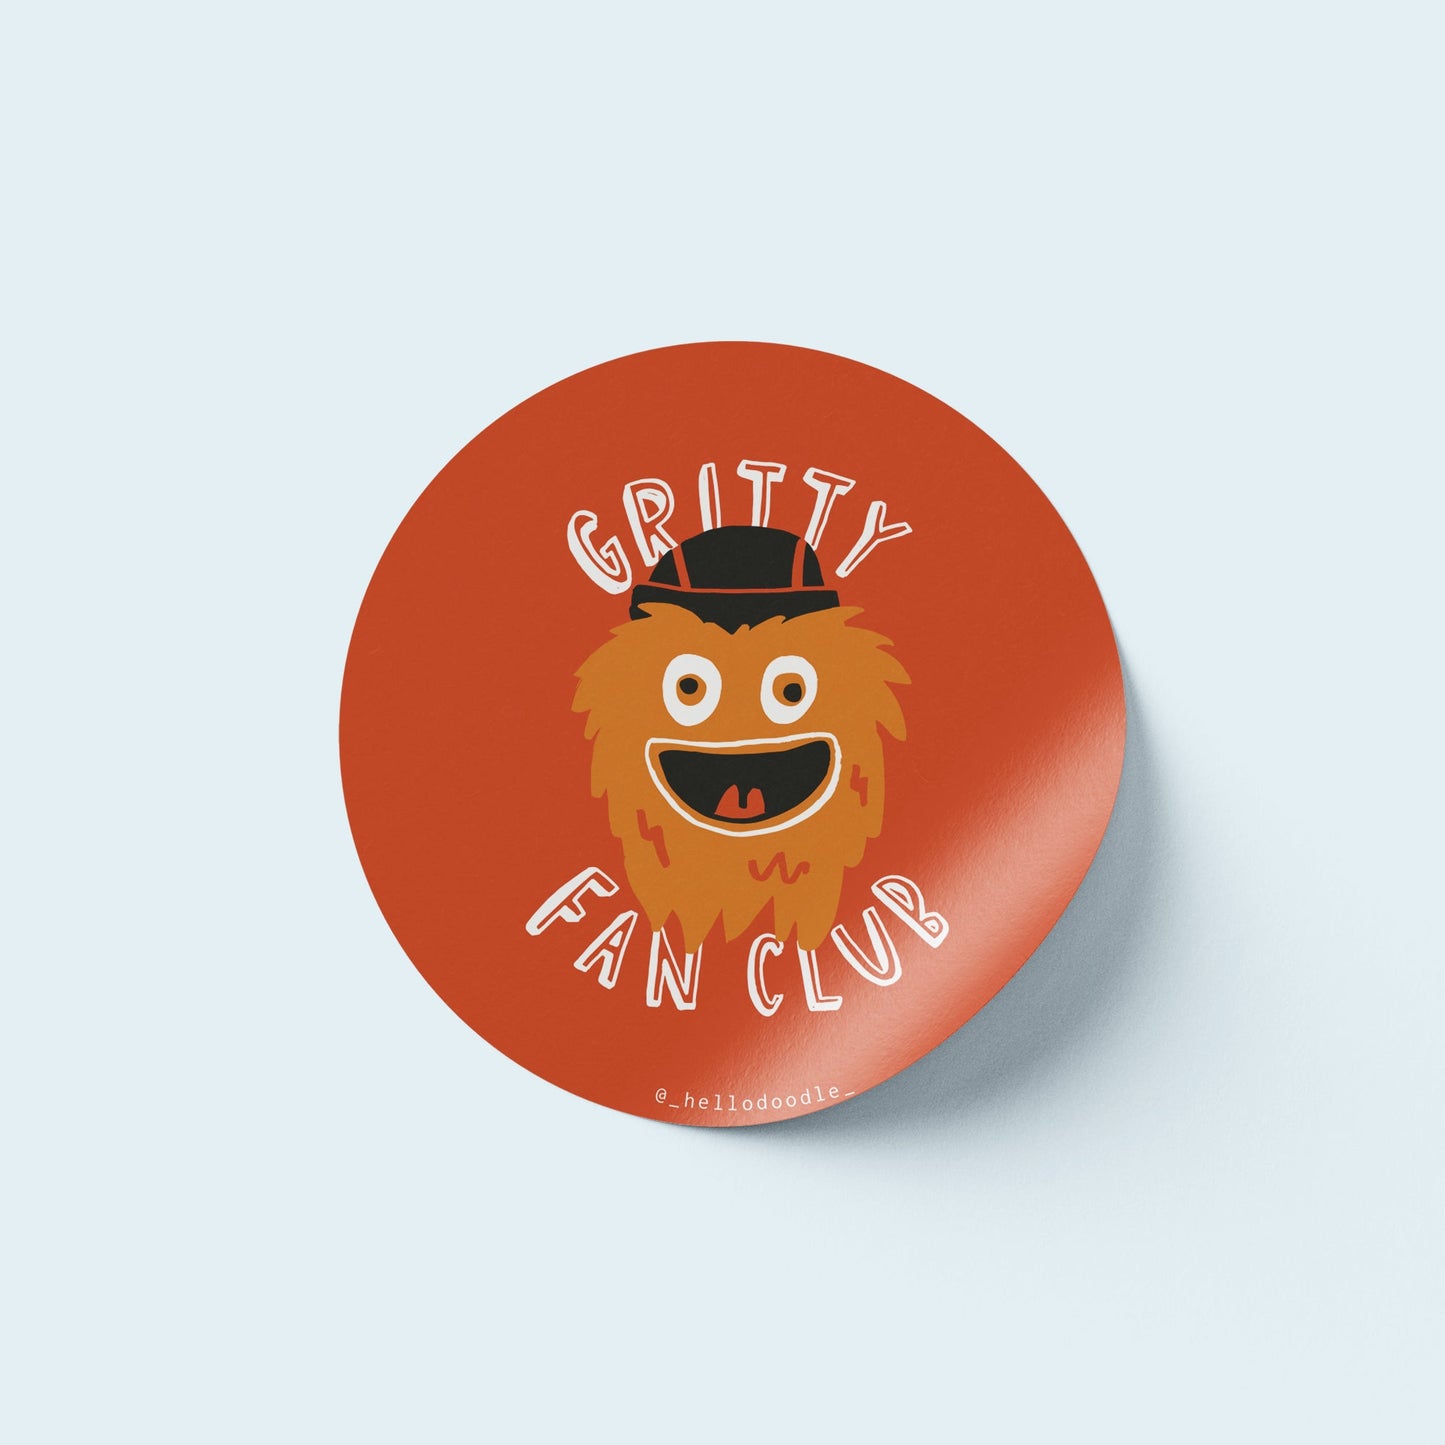 Gritty Fan Club Sticker - Wholesale